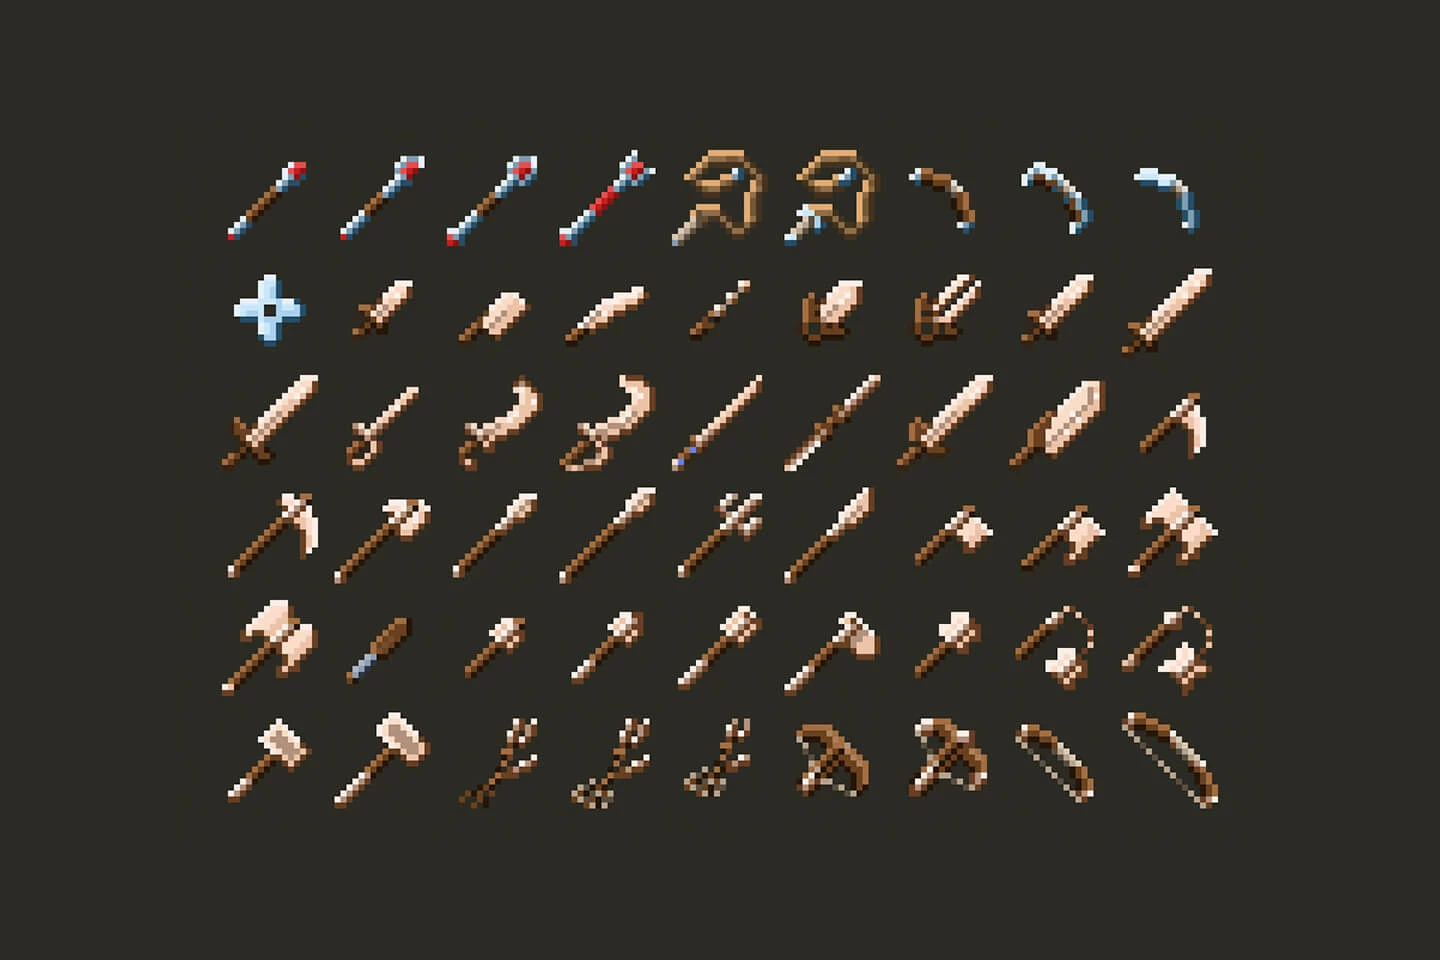 https://img.craftpix.net/2021/01/RPG-Weapons-Pixel-Art-Pack3.webp